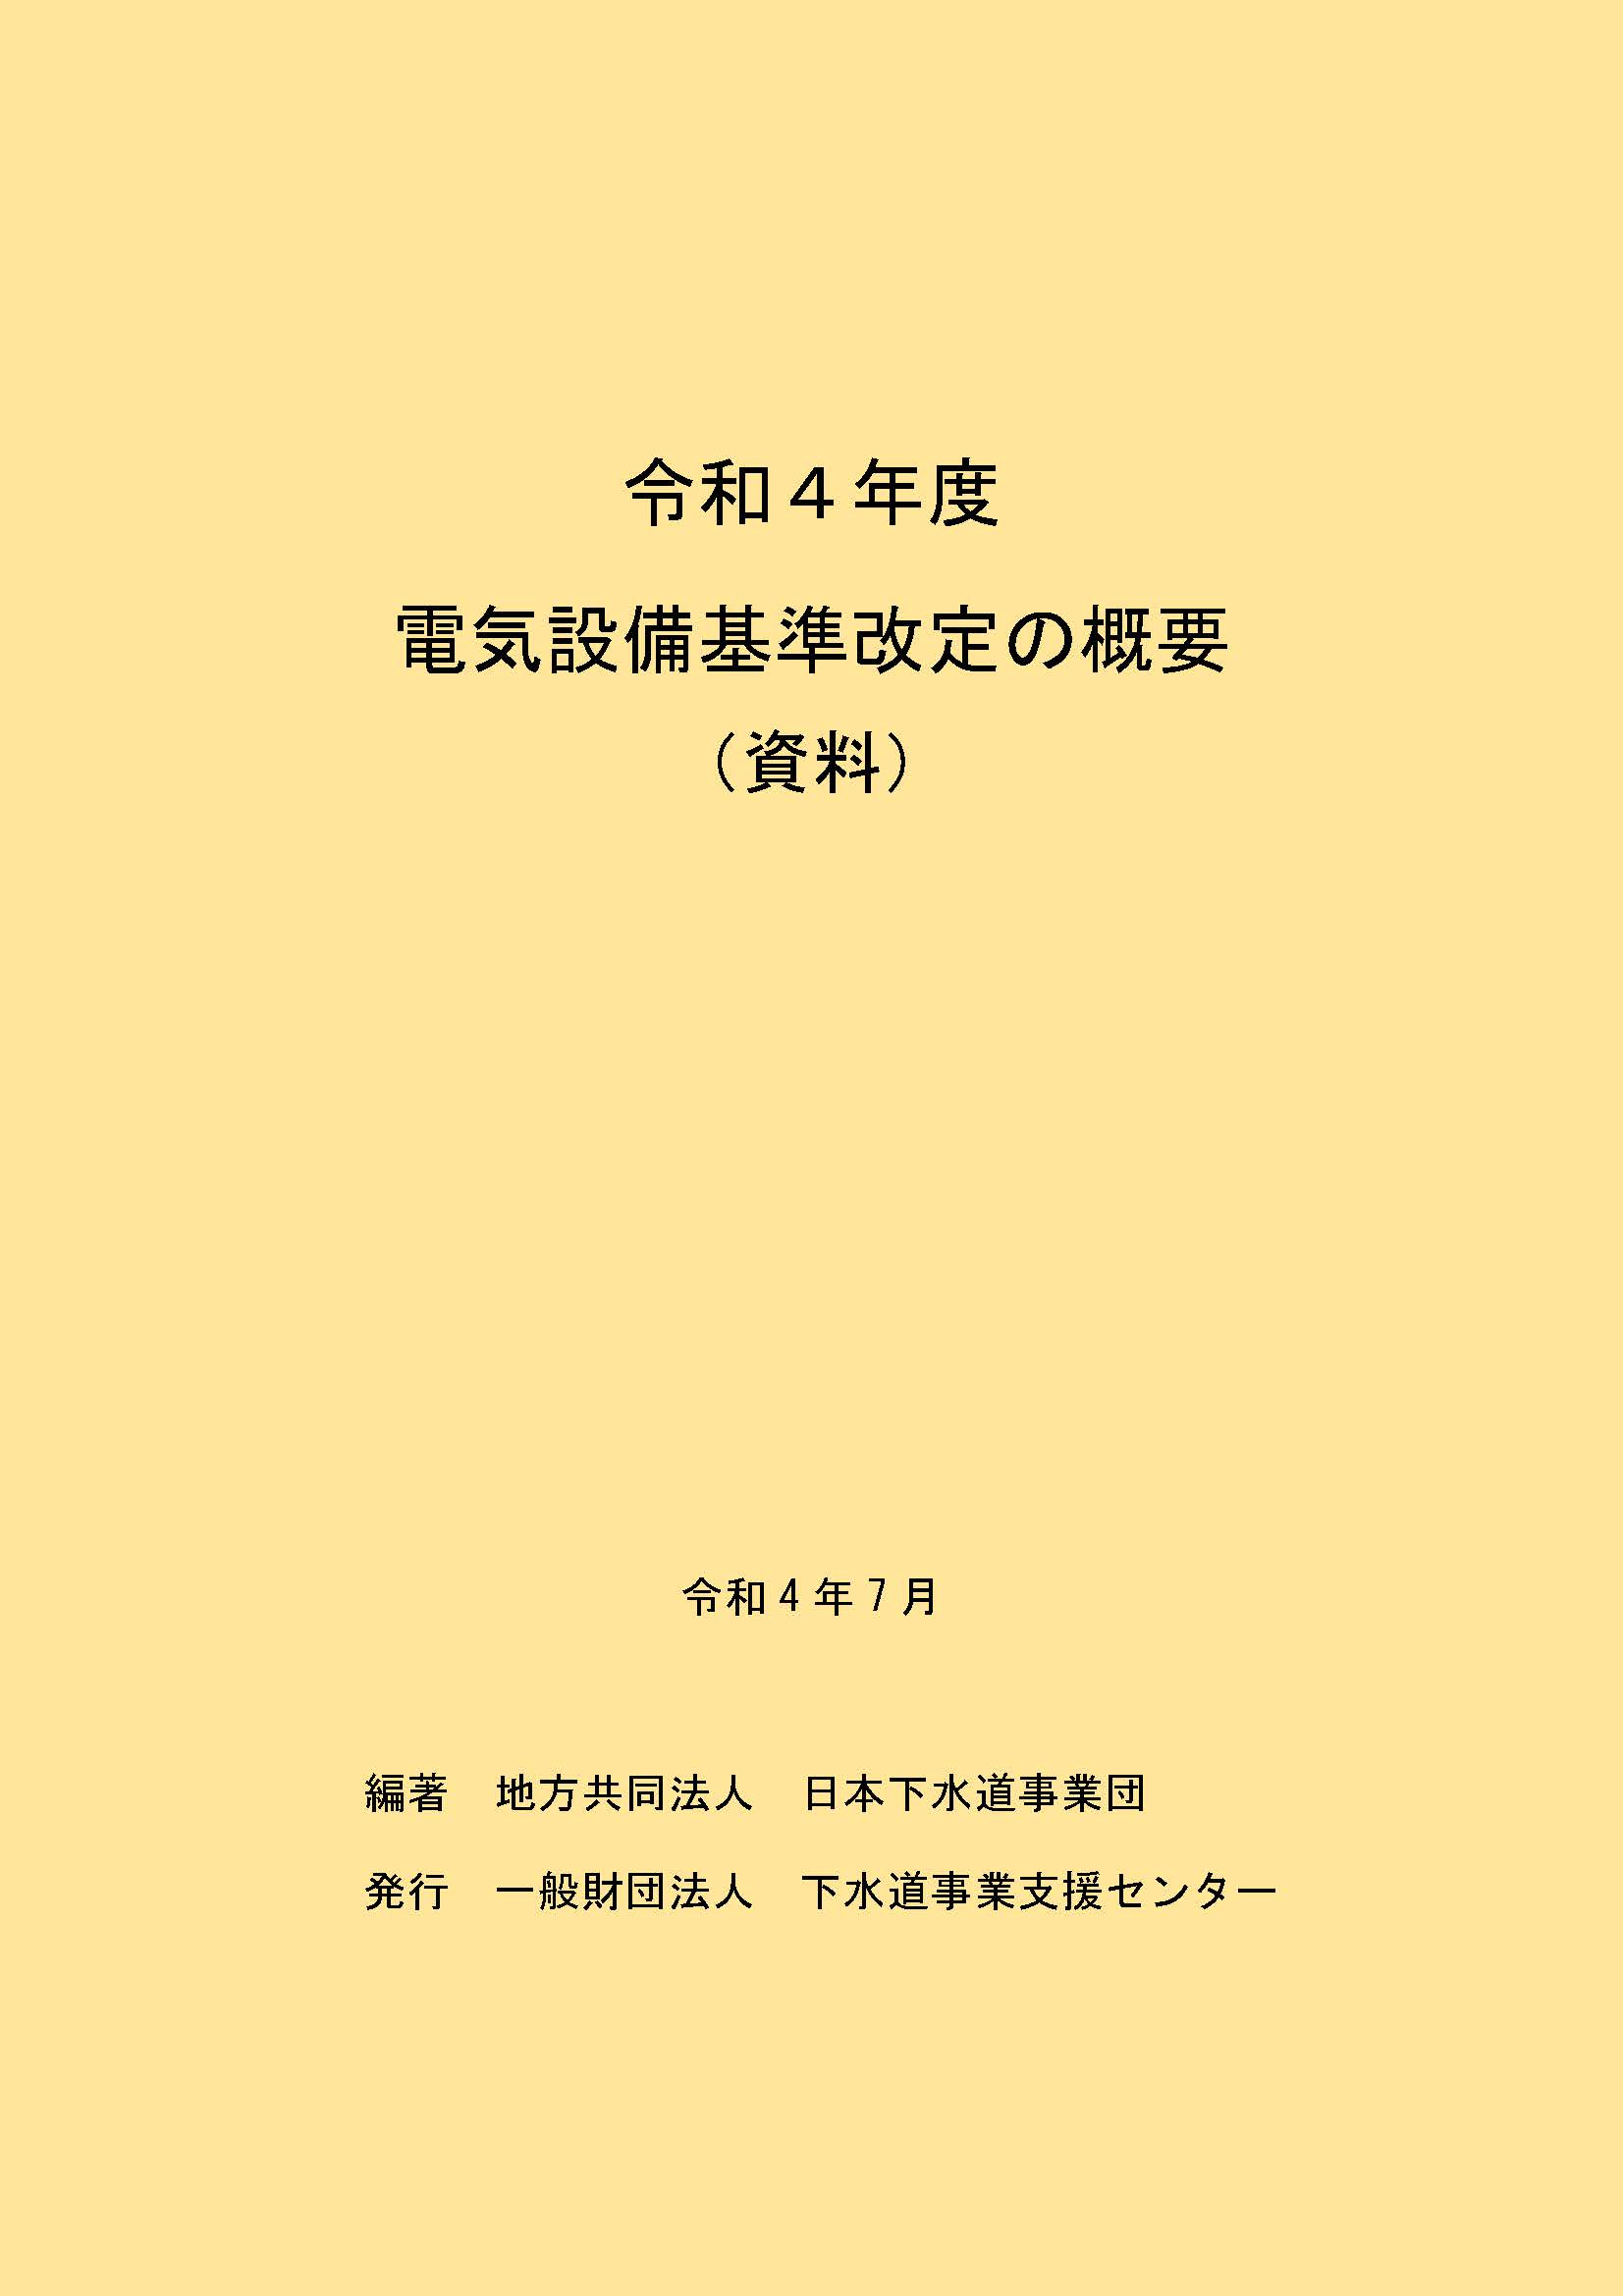 コード⊄ ヤフオク! 令和元年度版下水道白書 「日本の下水道」 - コード